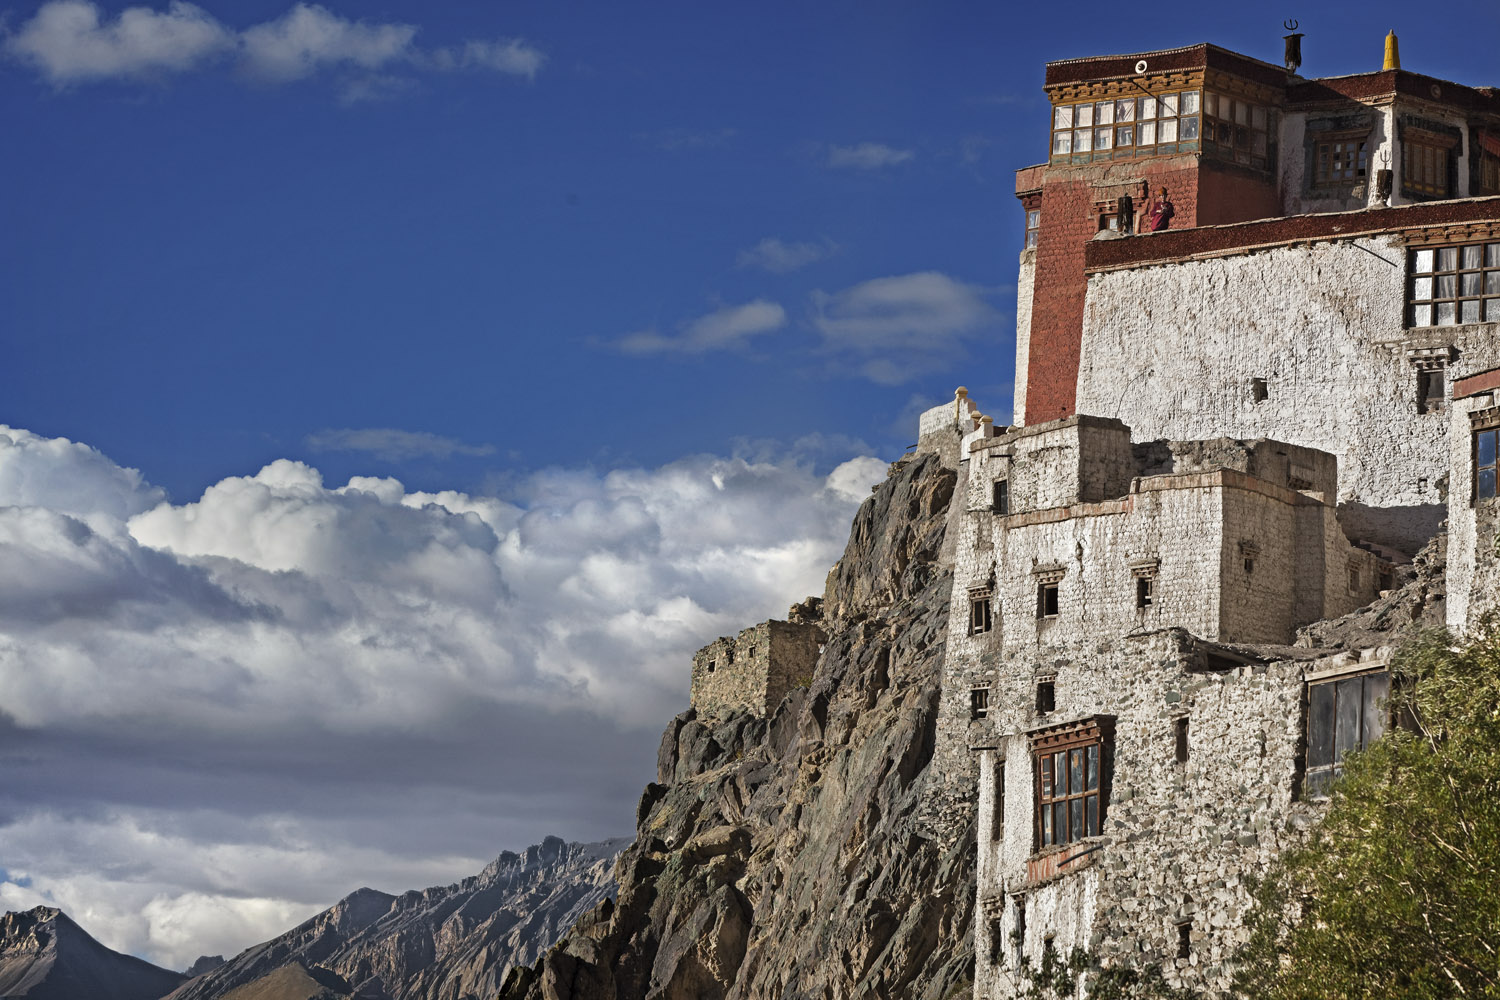 Stongde Monastery, Zanskar, Ladakh, India